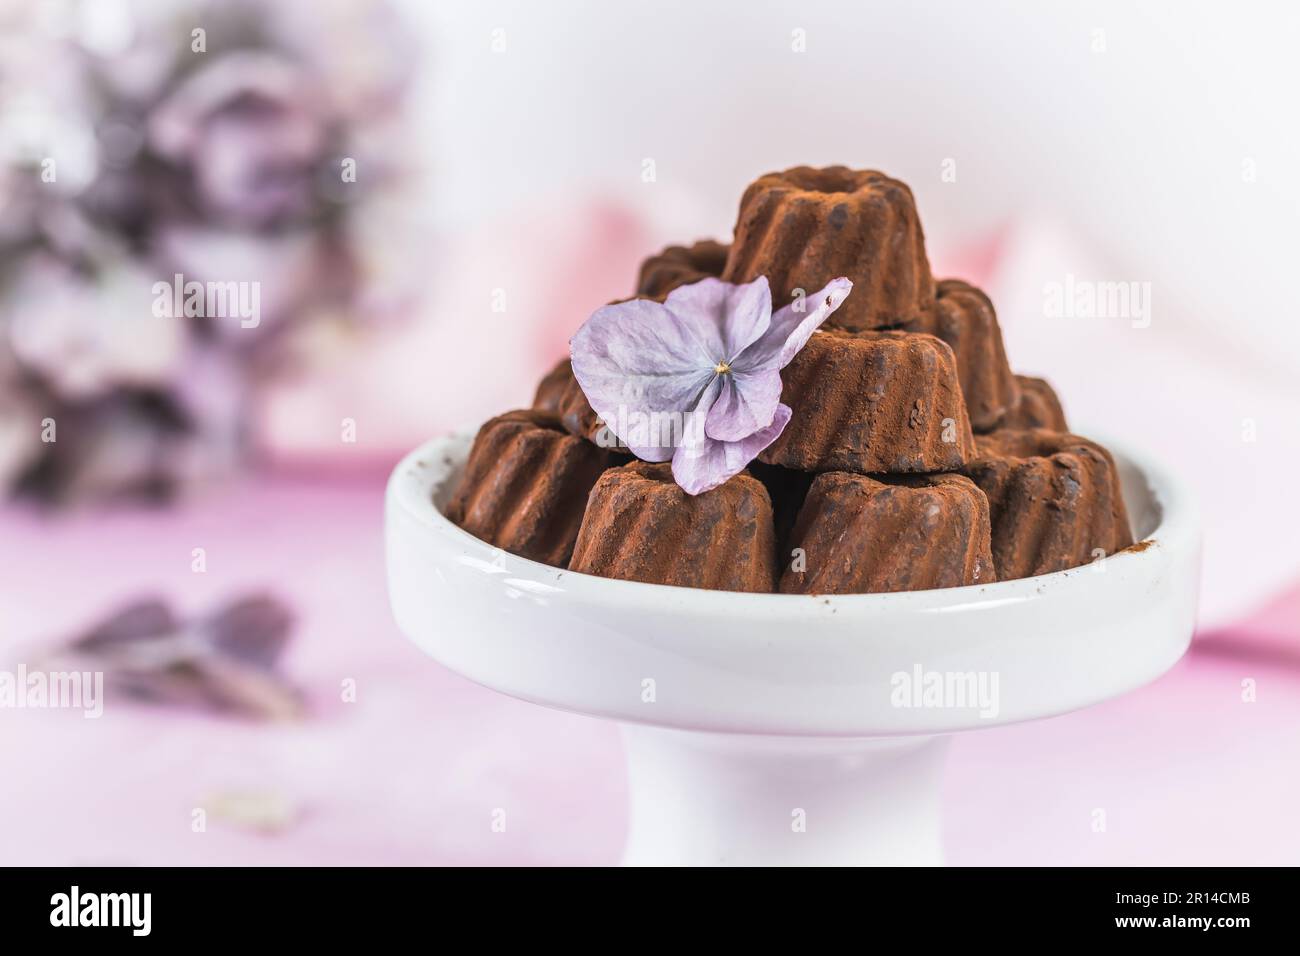 Praline al cioccolato in forma di piccoli dolci di Bundt, spolverati con cacao, su sfondo rosa chiaro, decorati con fiori di ortensia Foto Stock